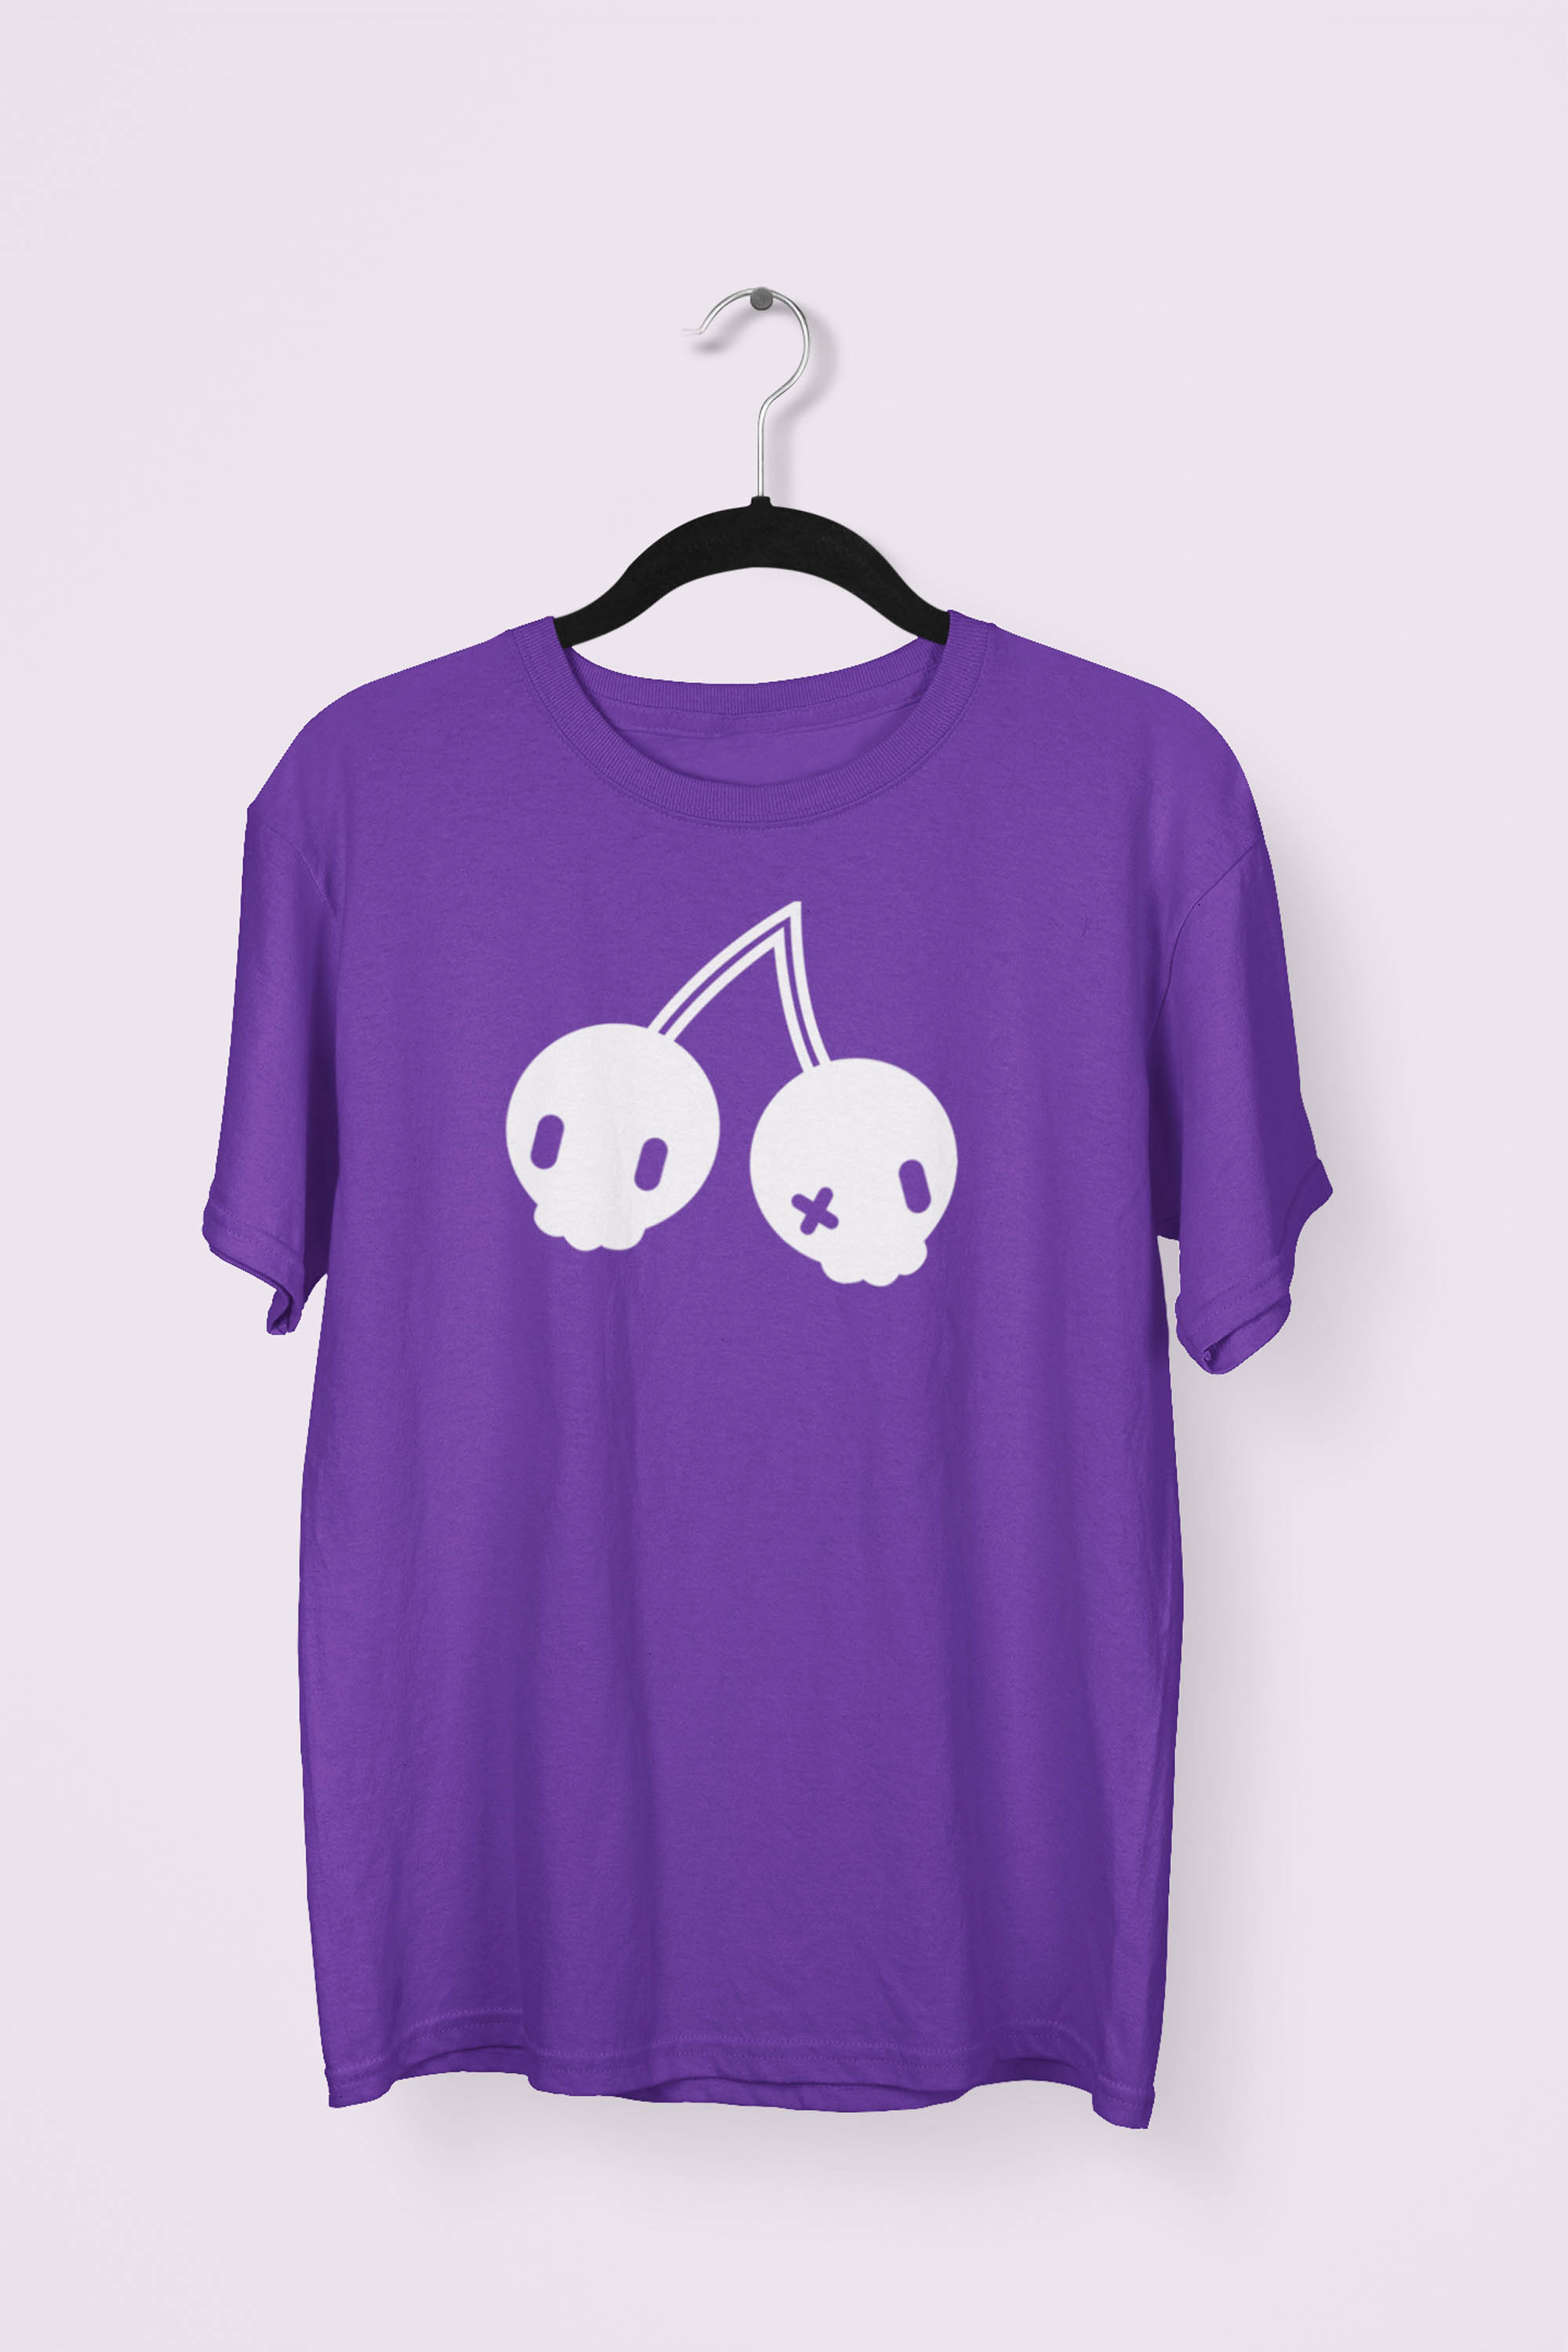 Cherry Skulls T-shirt by Dokkirii - Purple